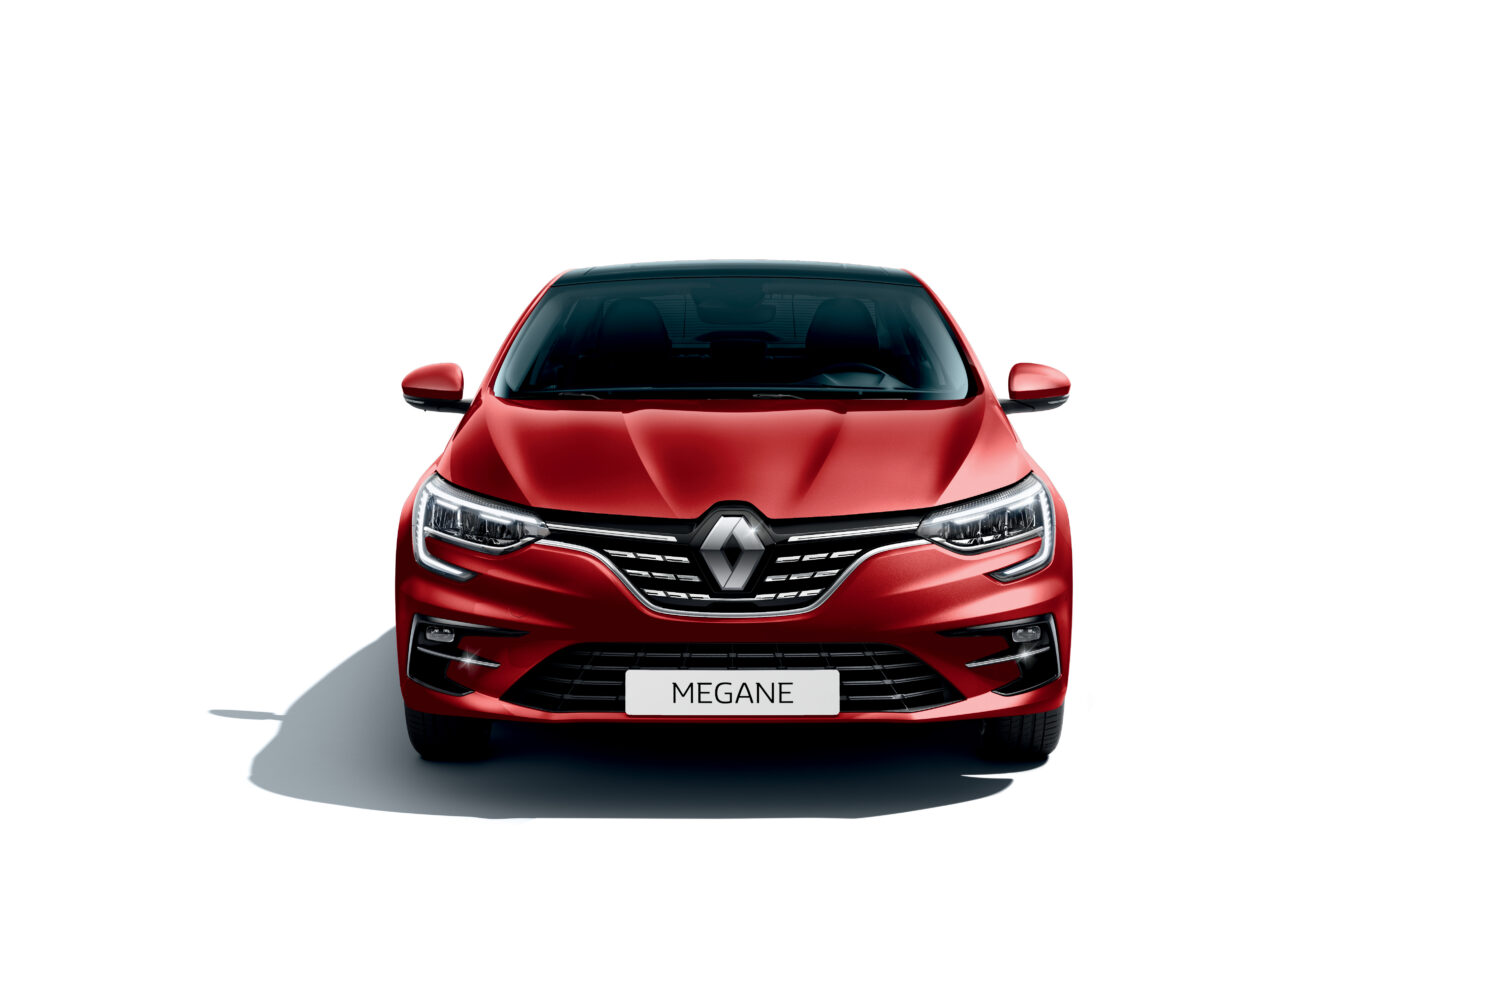 2020 - New Renault MEGANE SEDAN